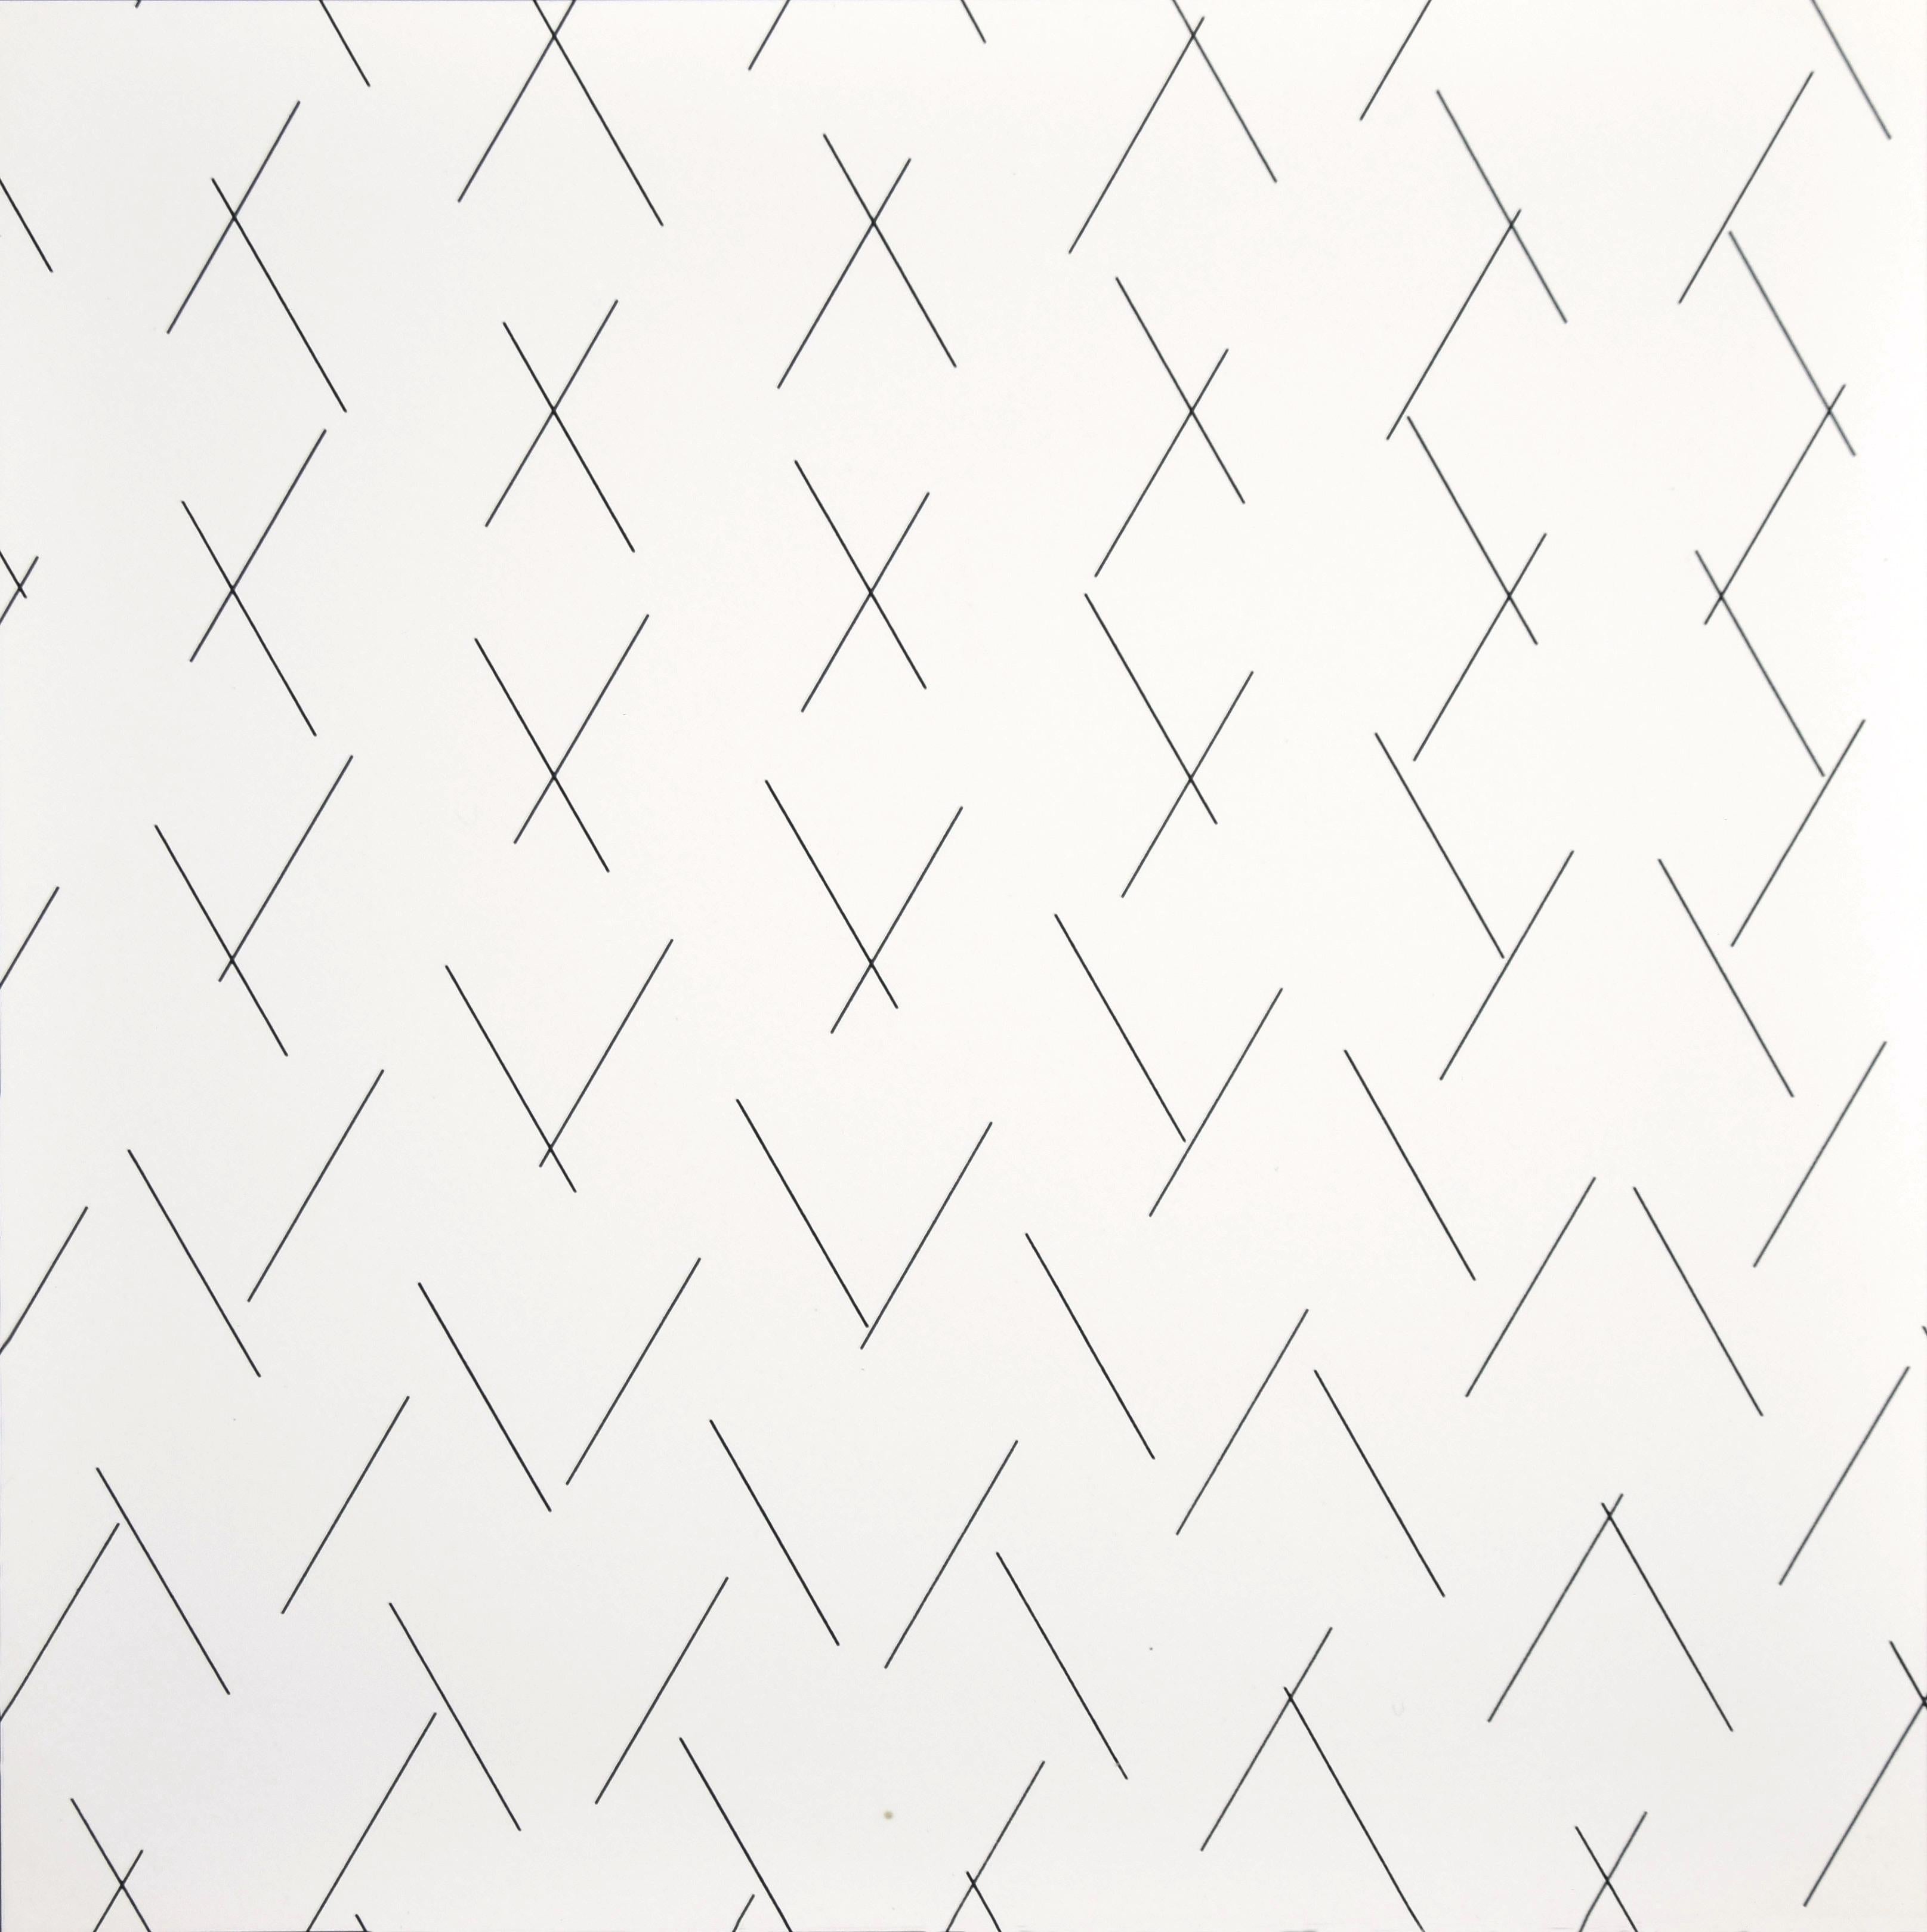 Sich kreuzende Linien - Platte 3 - Siebdruck von François Morellet - 1975